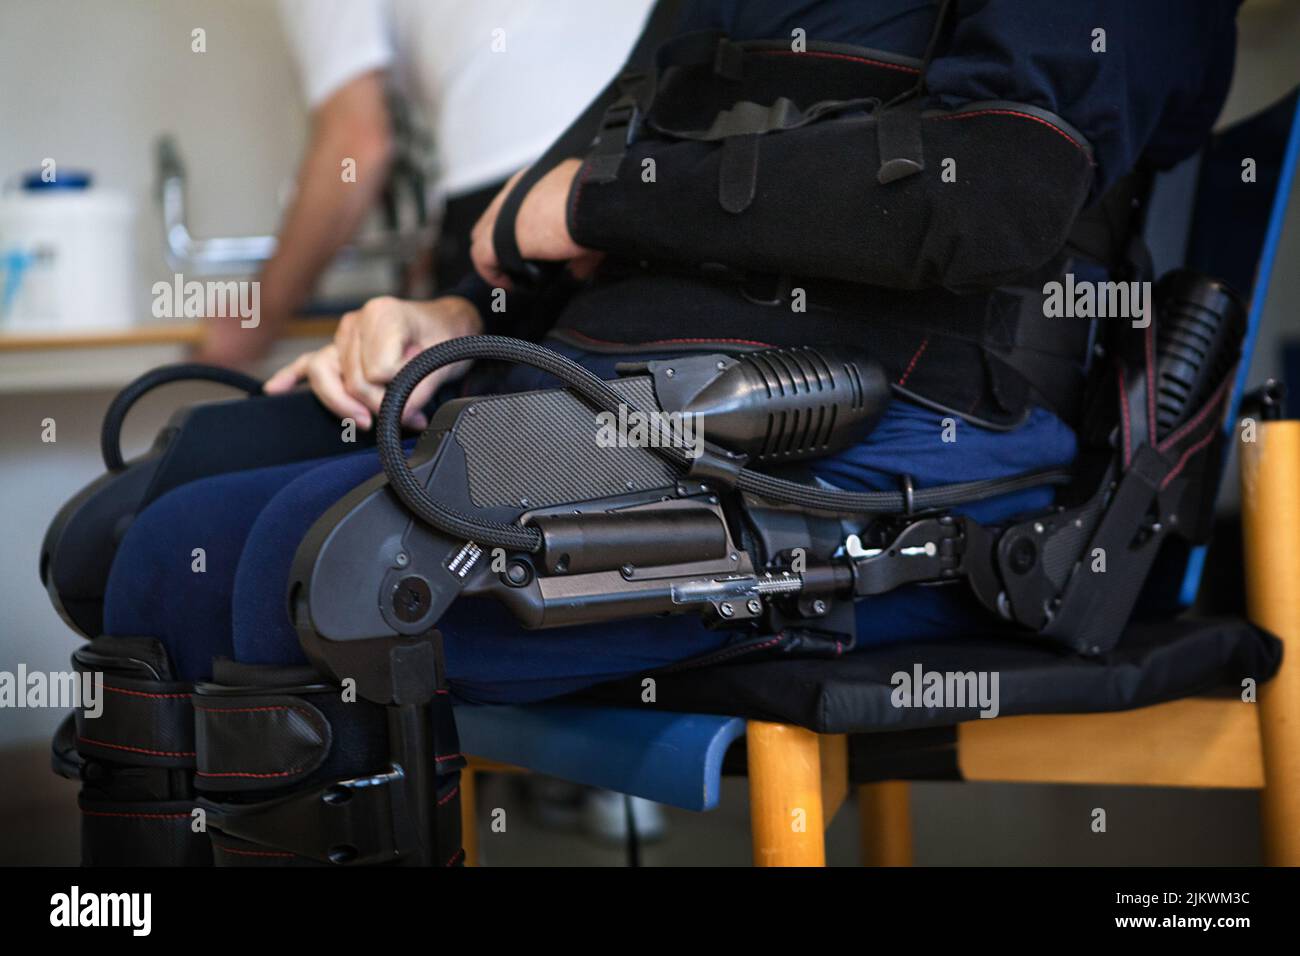 Réadaptation neurologique post-AVC d'un patient paralysé des deux jambes à l'aide d'un exosquelette bionique. Banque D'Images